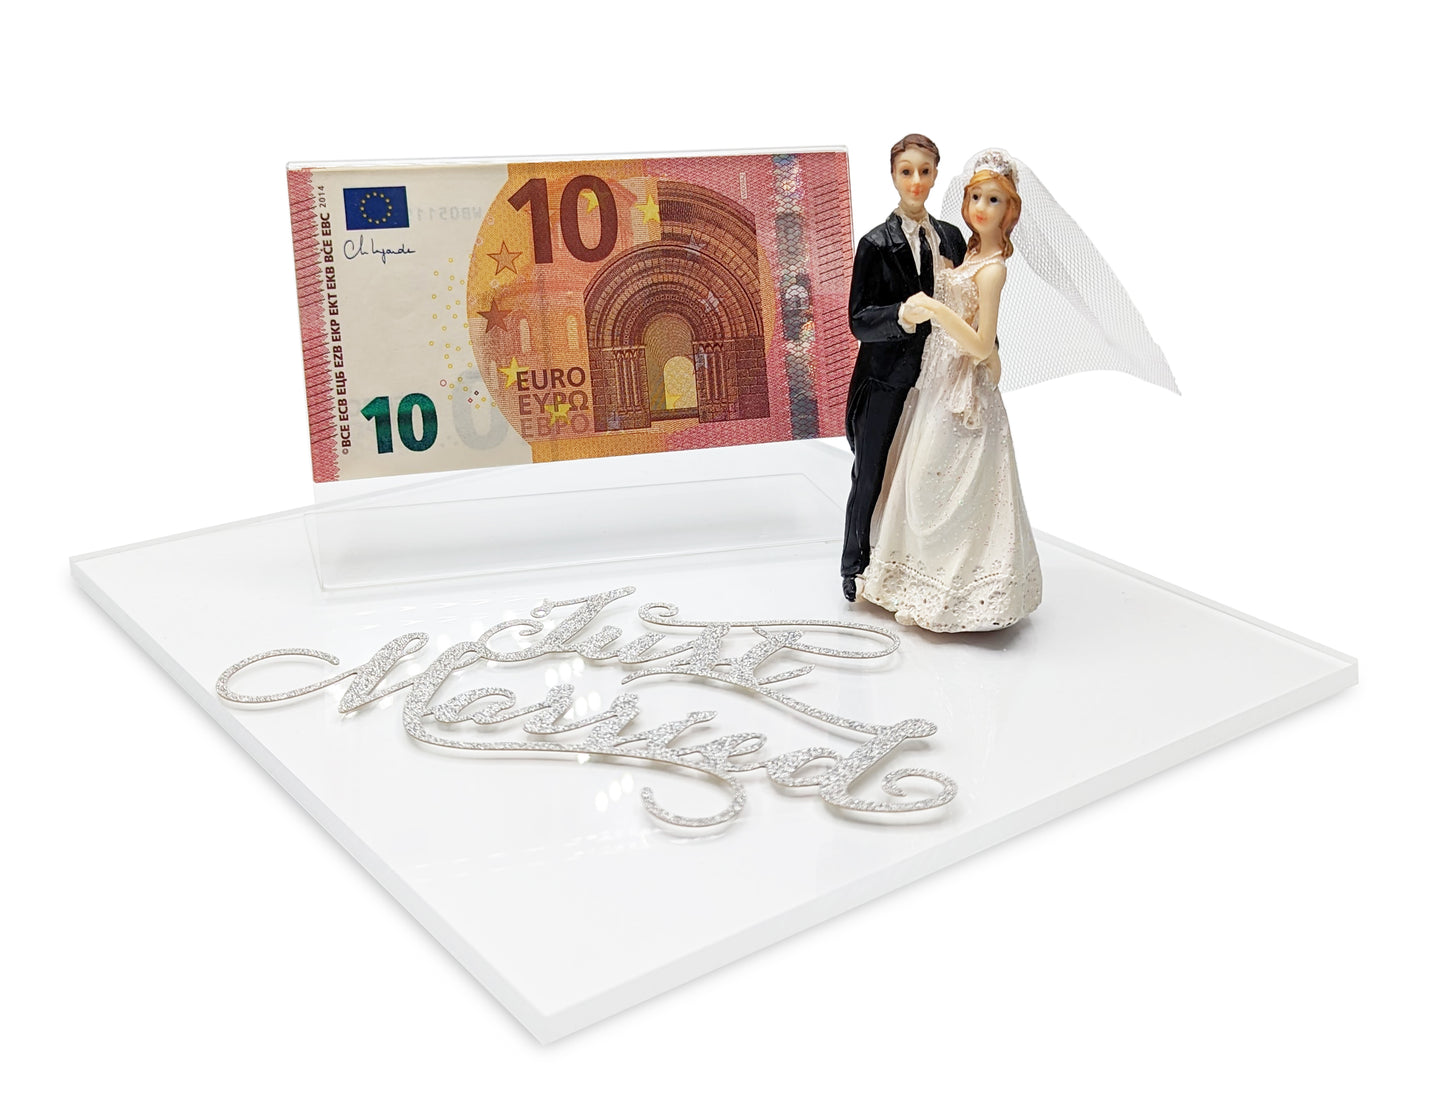 Hochzeitsgeschenke für das Brautpaar | Hochzeitsgeschenk Geldgeschenk | Hochzeit Geschenke Geld | Geldgeschenk Hochzeit personalisiert